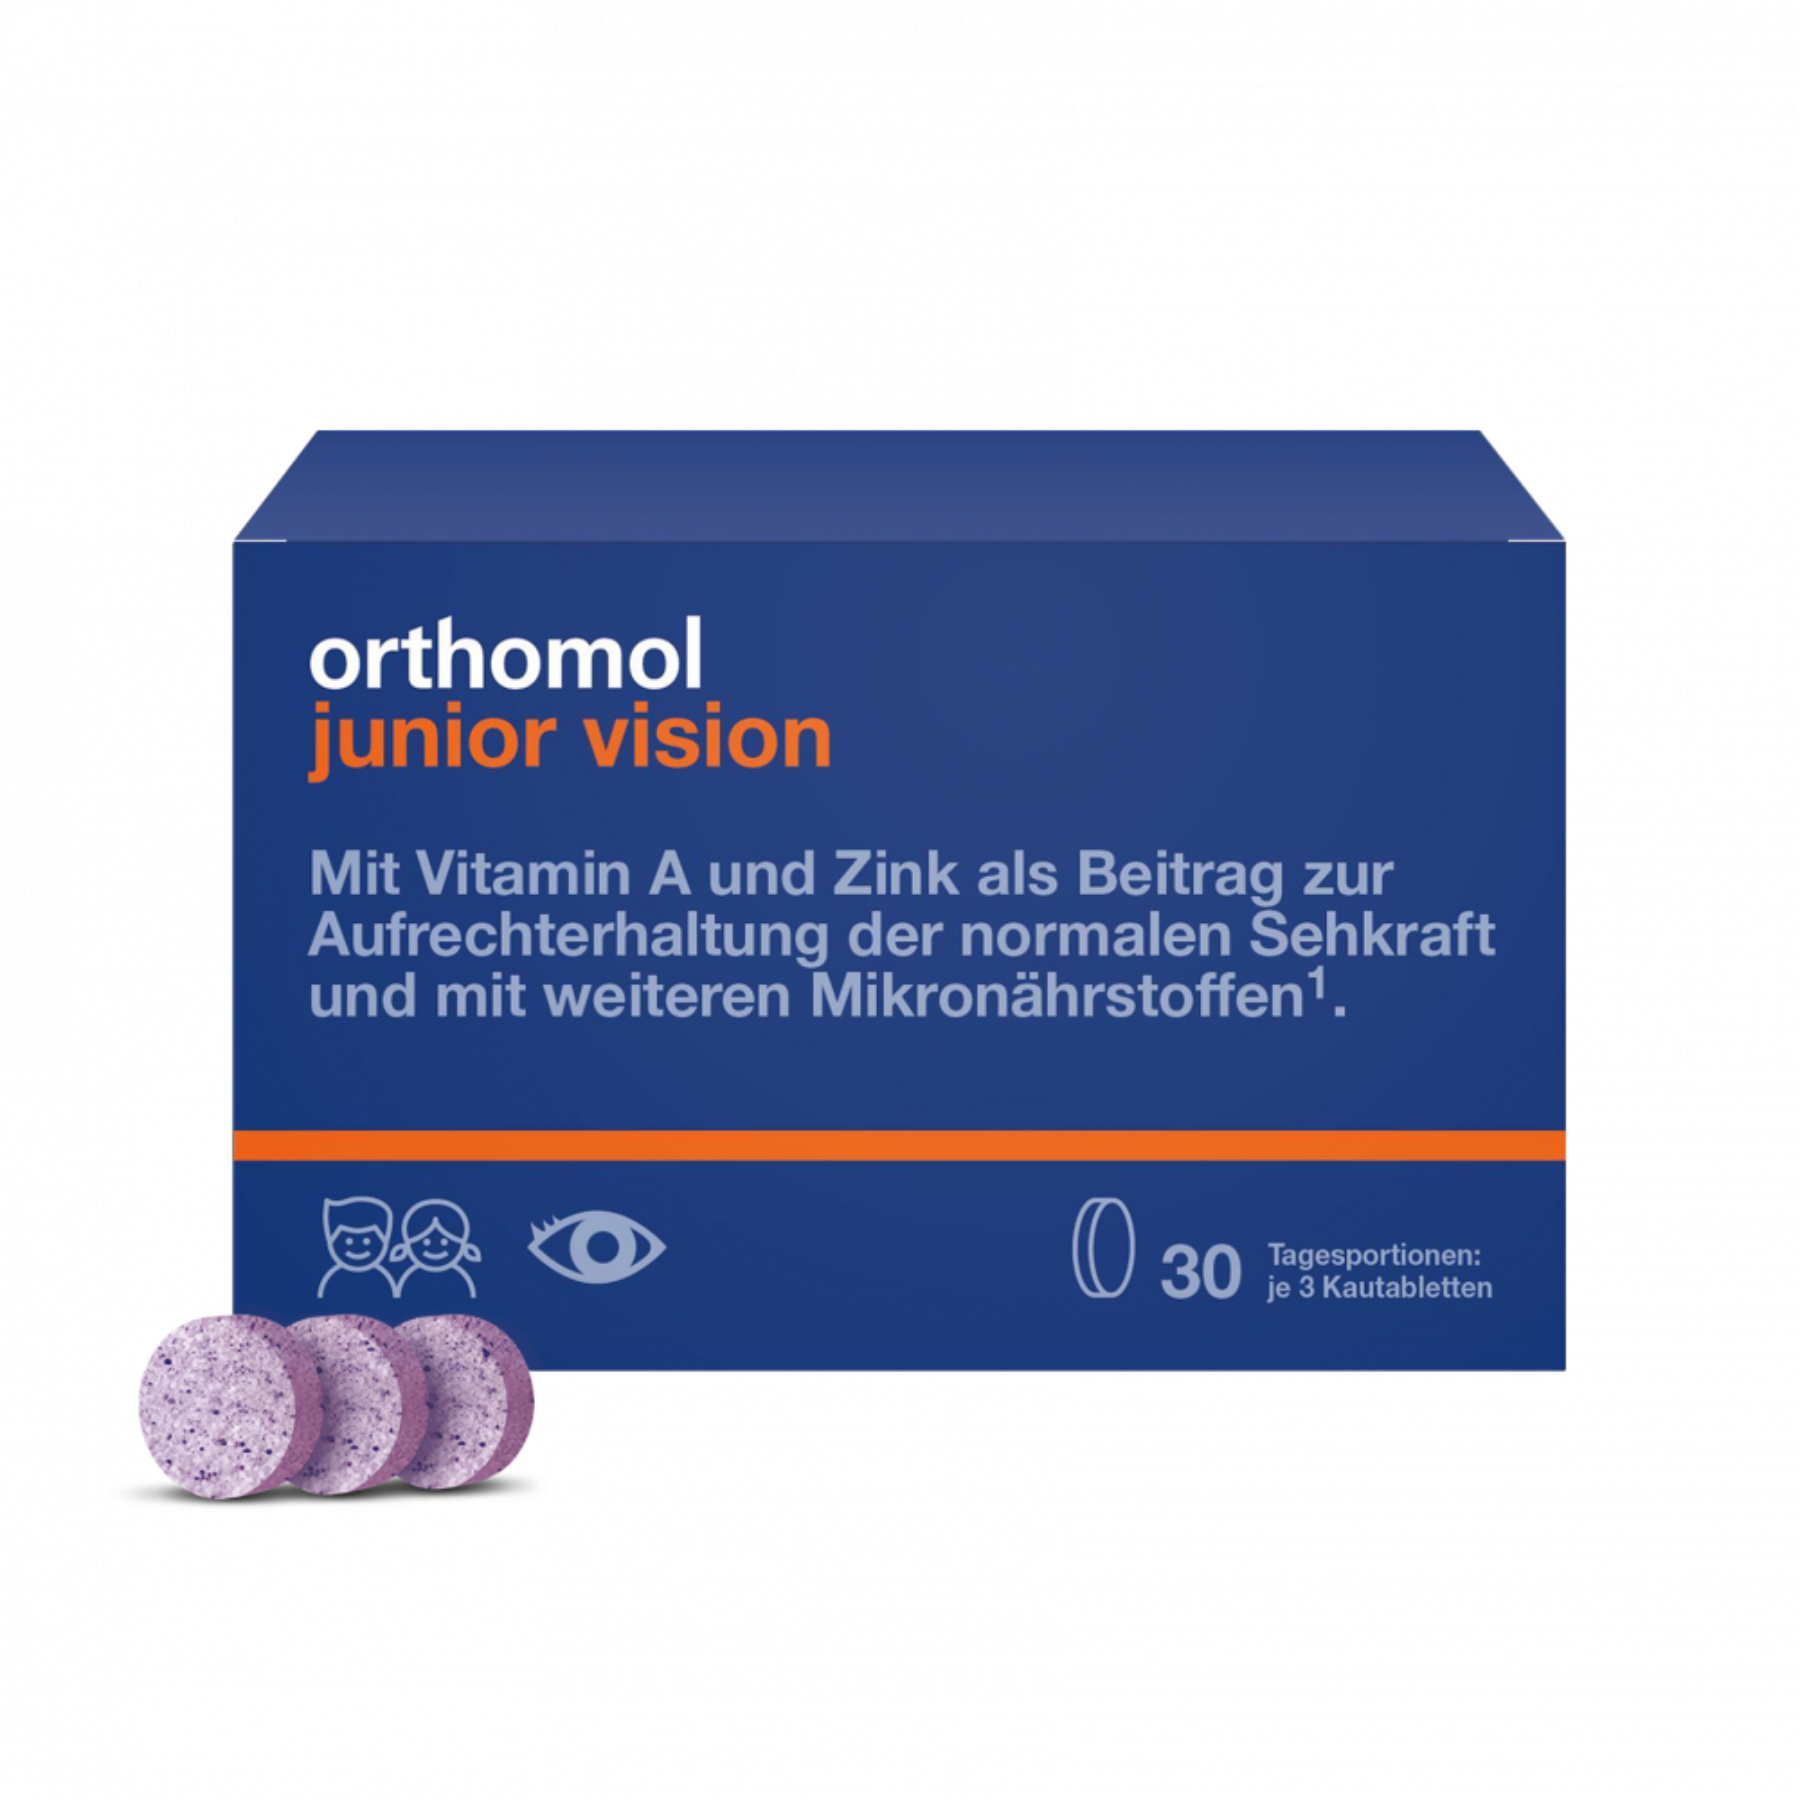 Жувальні таблетки зі смаком чорниці-персику Orthomol Junior Vision (для зміцнення зору), 30 шт